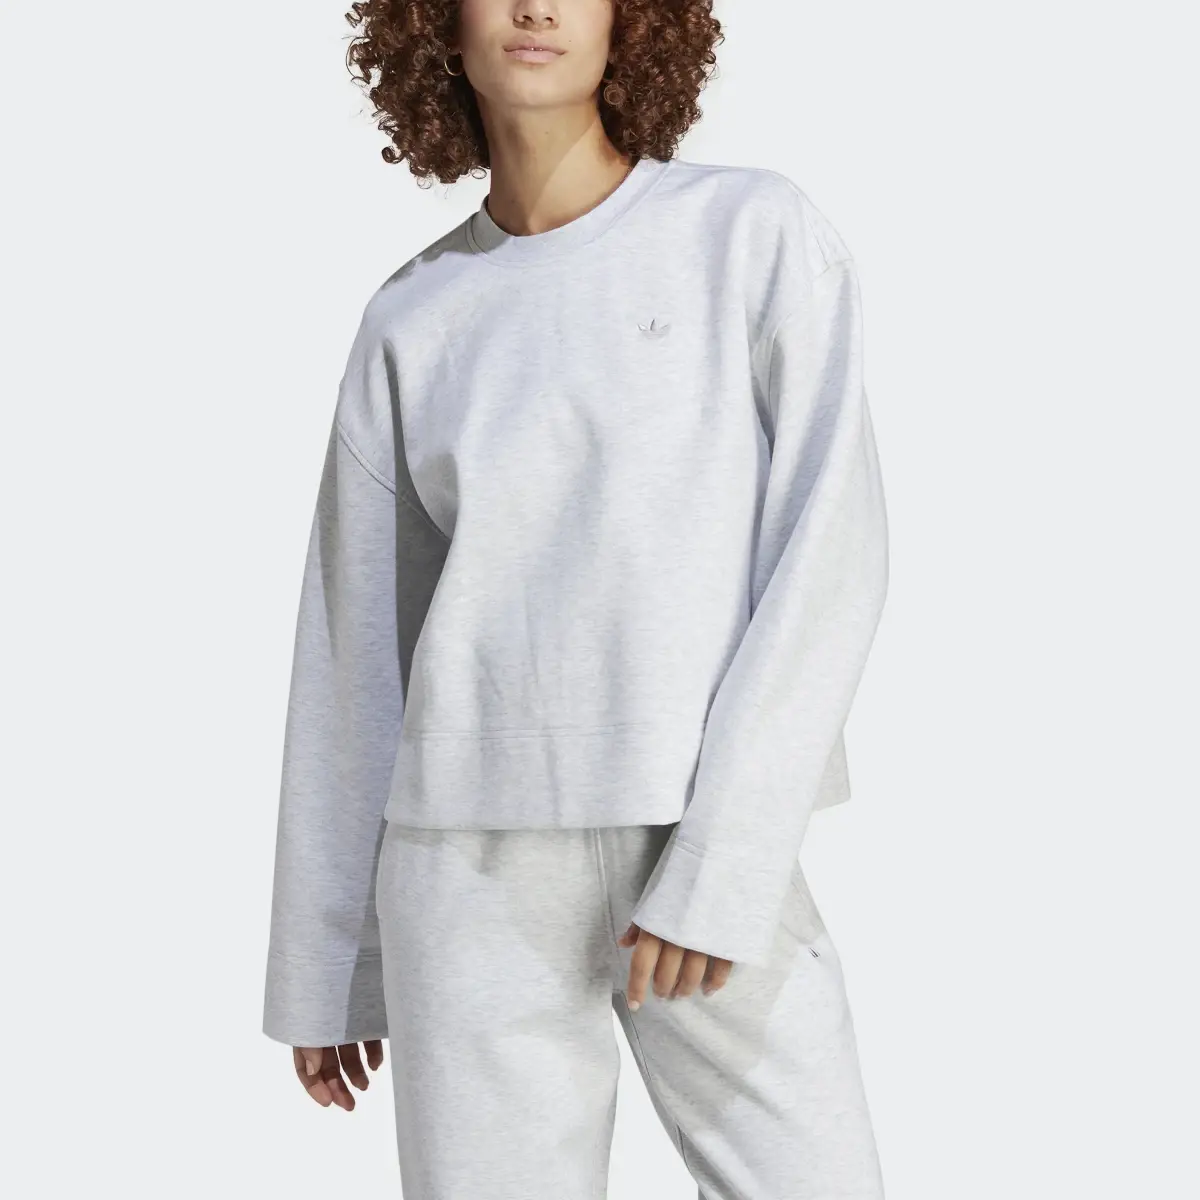 Adidas Premium Essentials Crew Sweater. 1